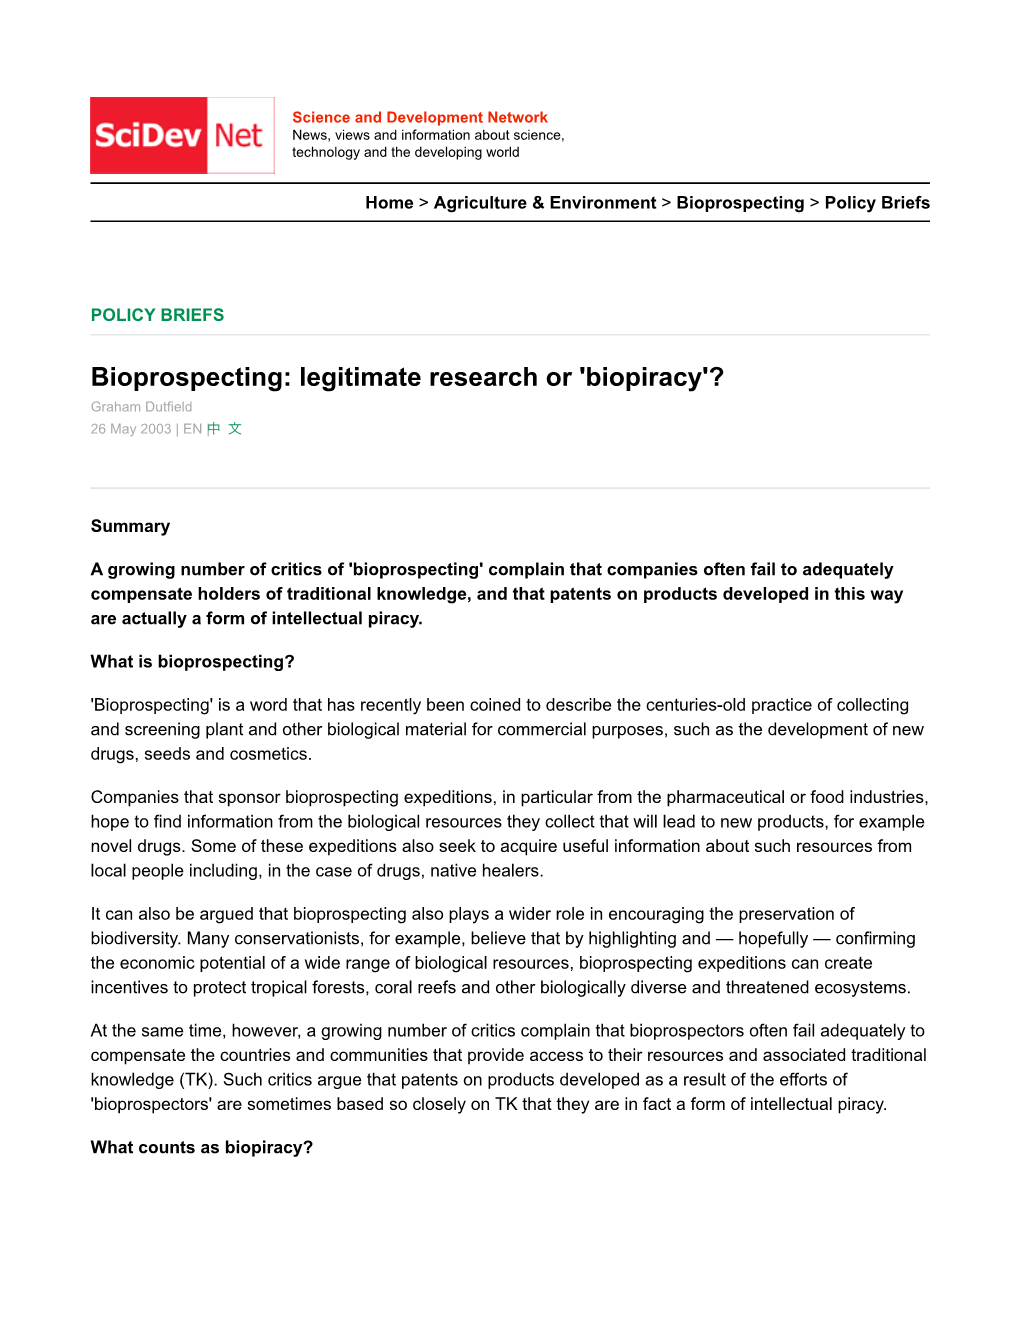 Bioprospecting Legitimate Research Or 'Biopiracy'?